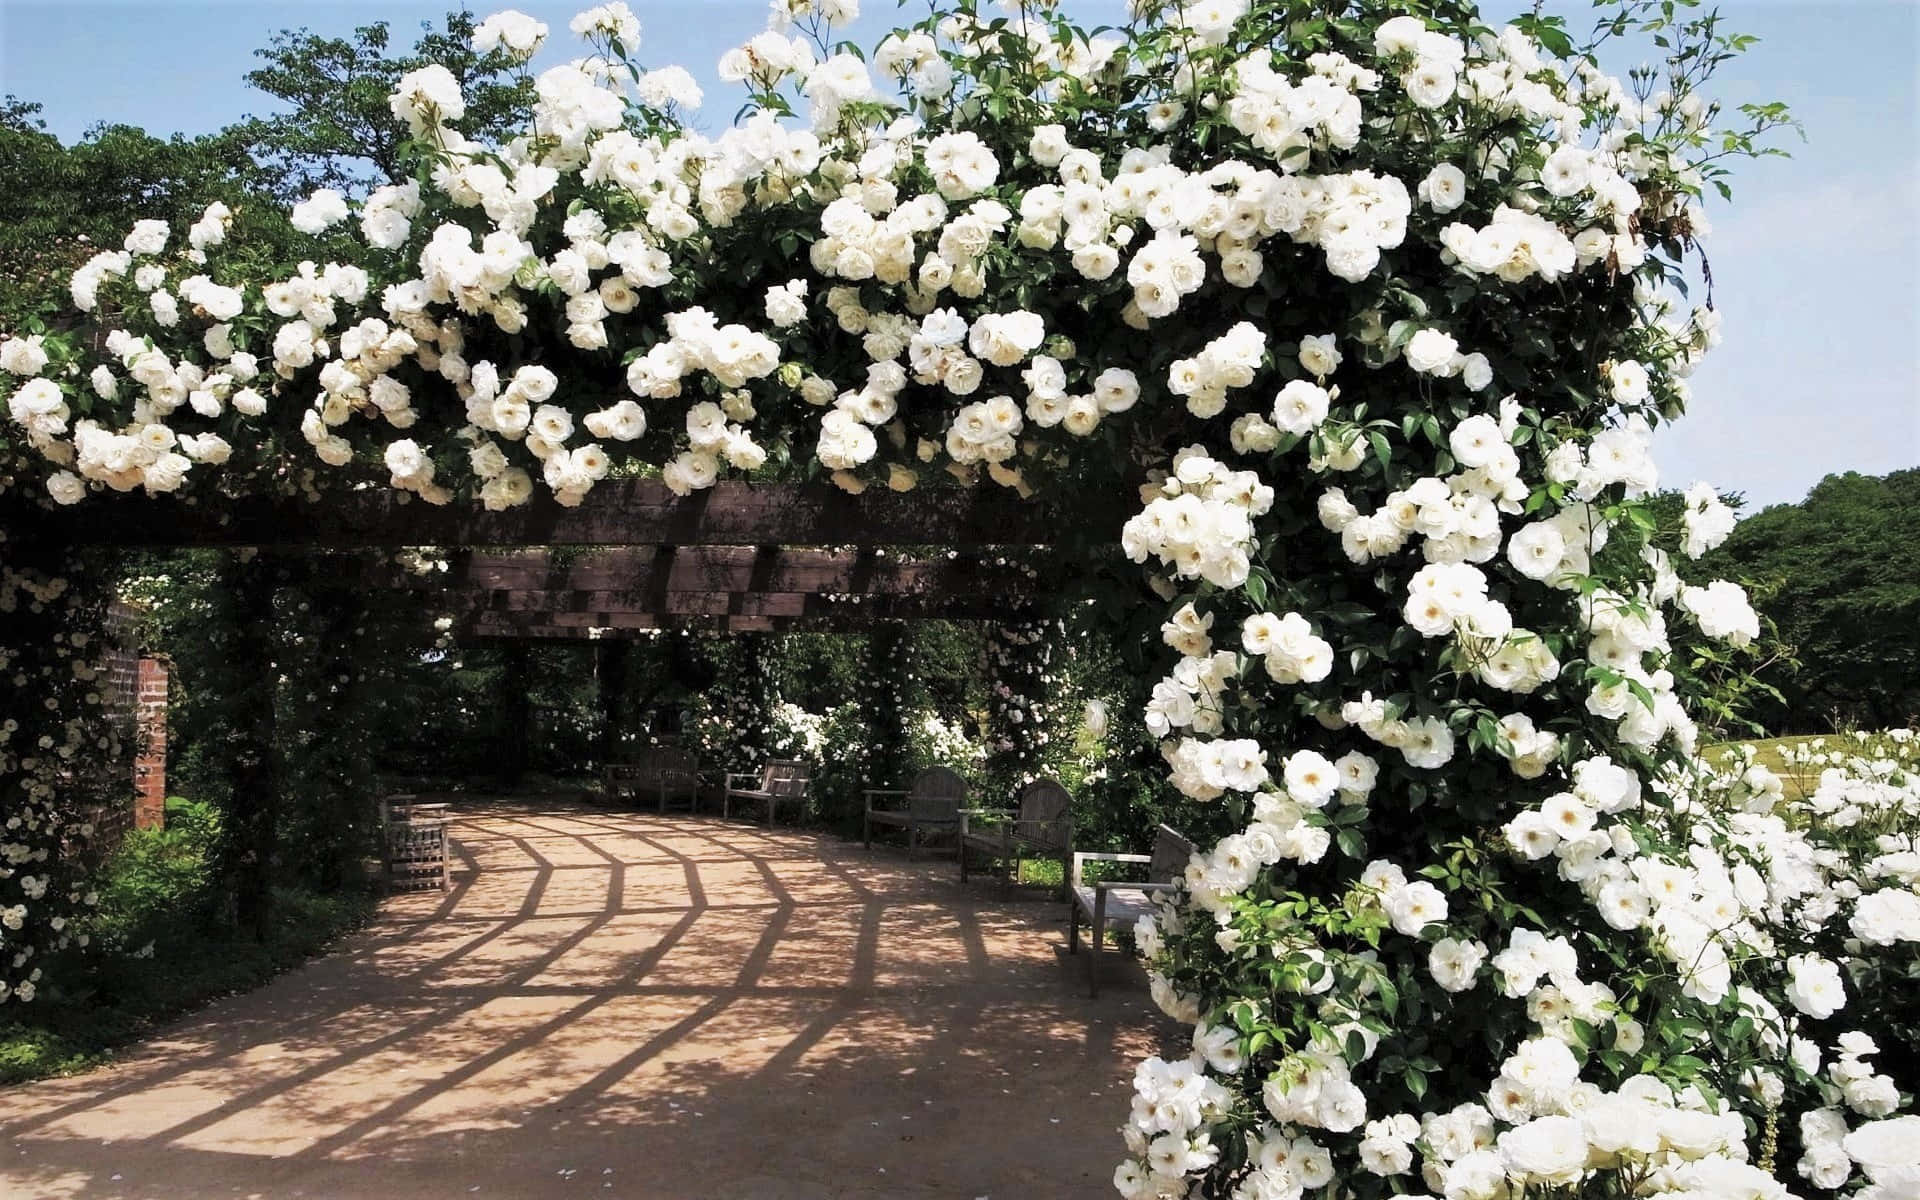 Imagemde Um Arco De Rosas Brancas De Jardim.